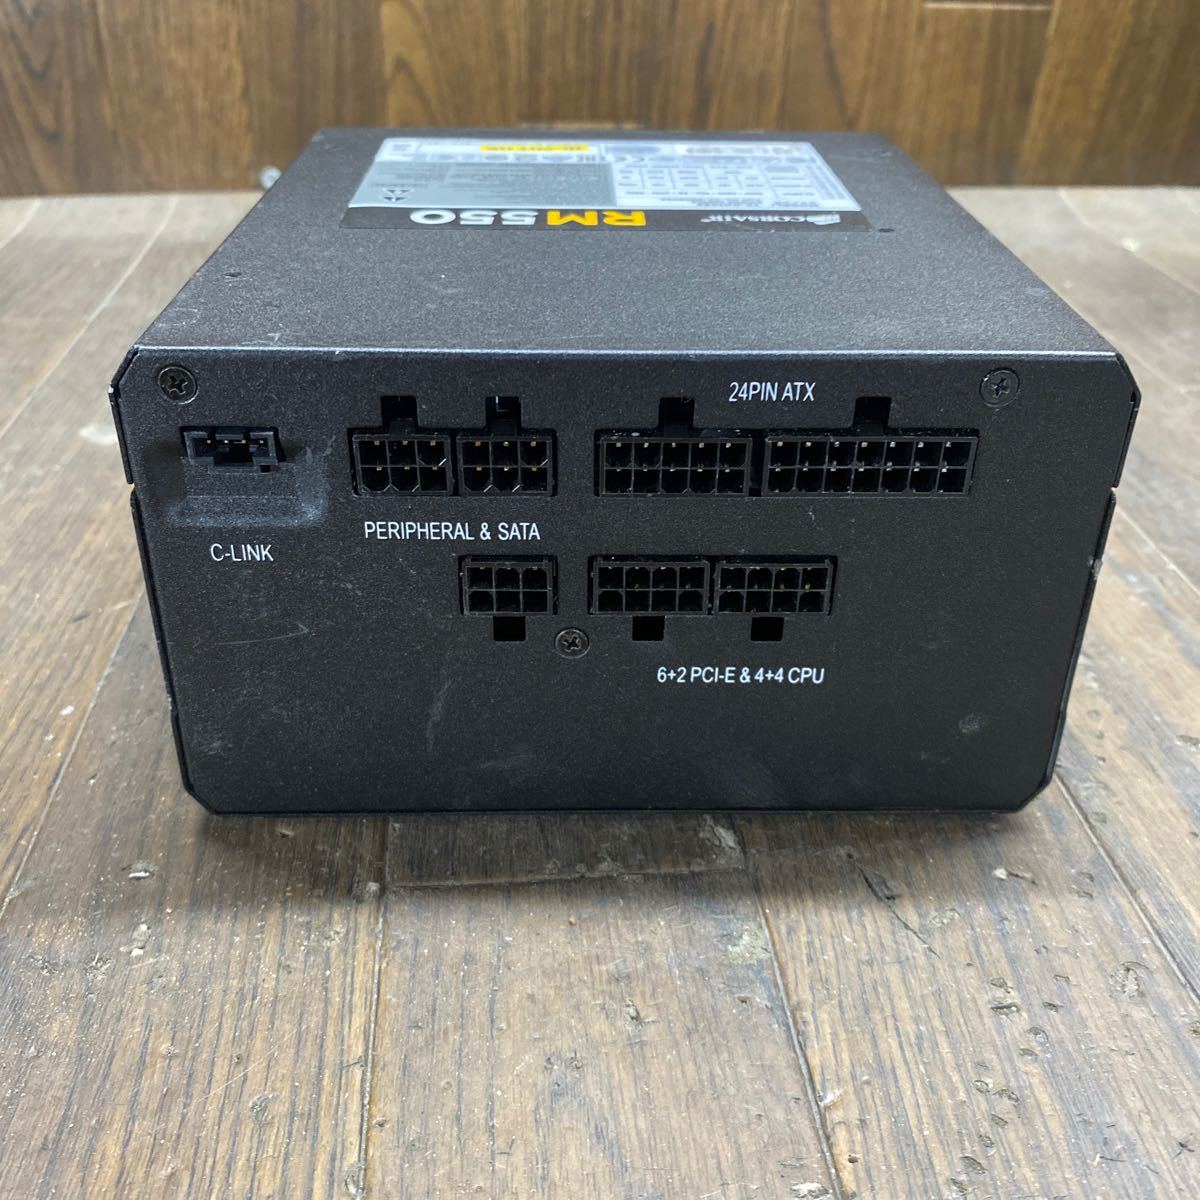 DB11-109 激安 PC 電源BOX CORSAIR RM550 75-001935 550W 電源ユニット 通電未確認 中古品_画像3